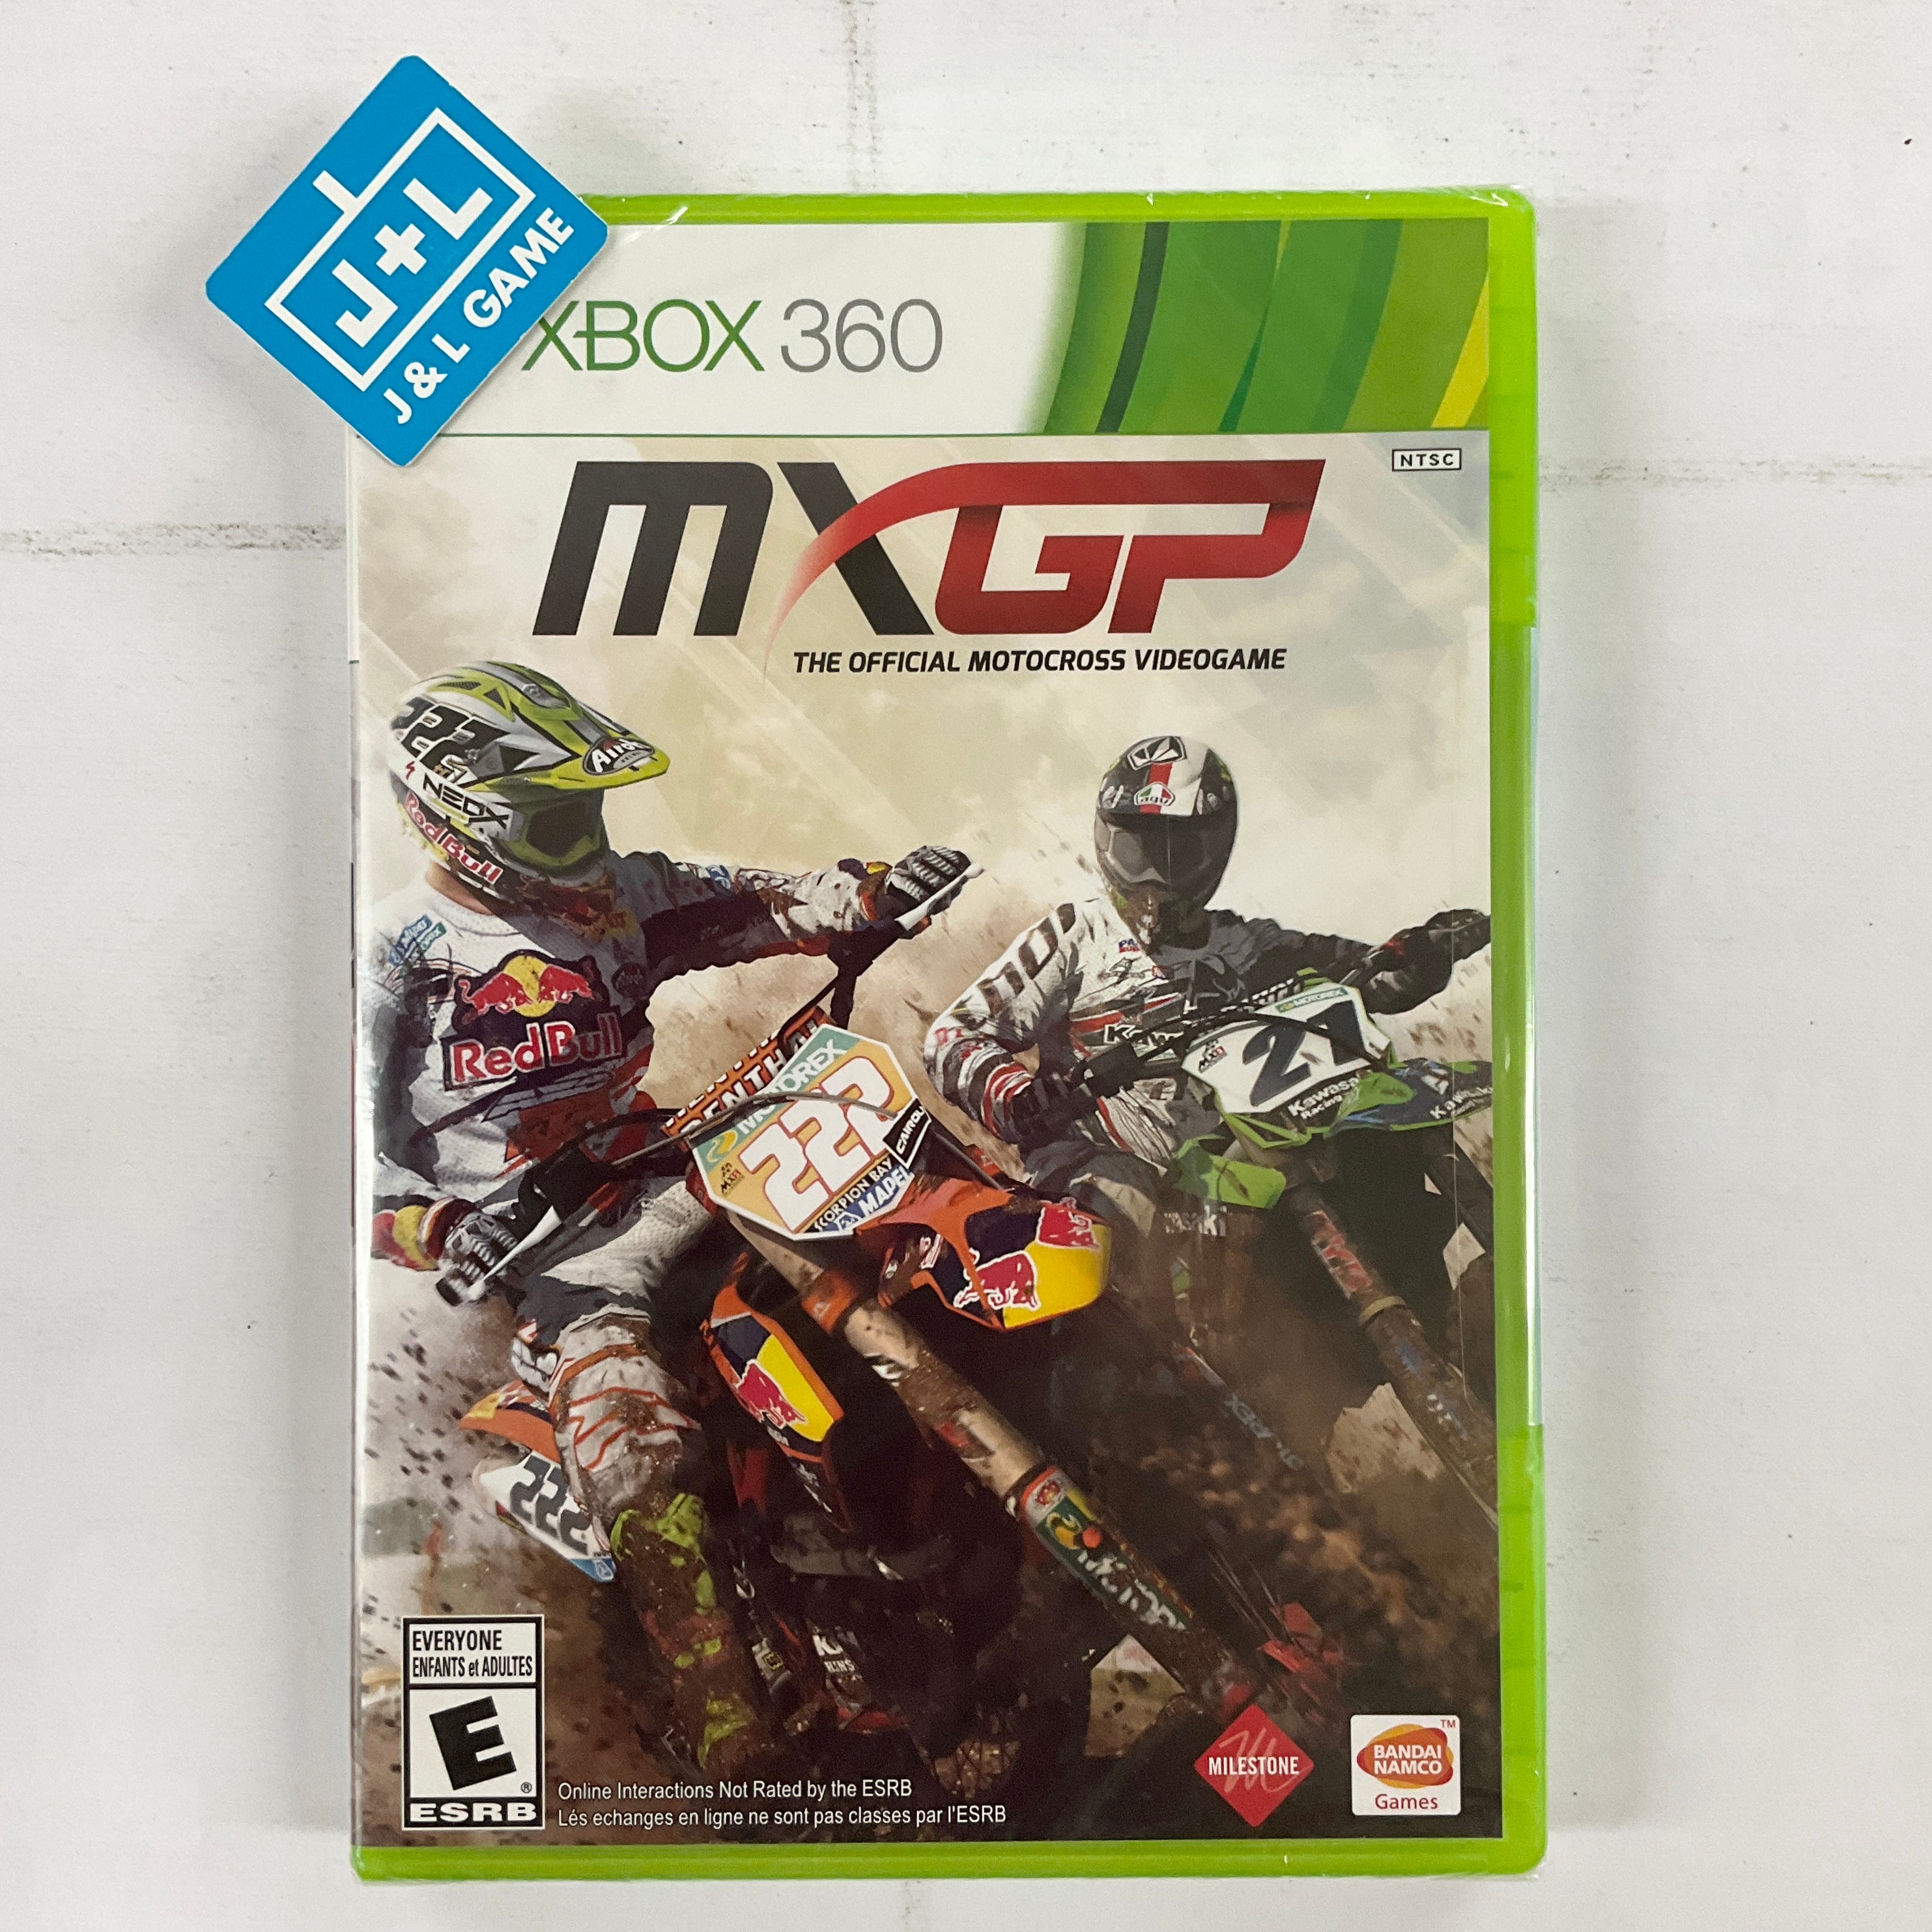 MXGP: The Official Motocross Videogame - Xbox 360 Video Games Bandai Namco Games   